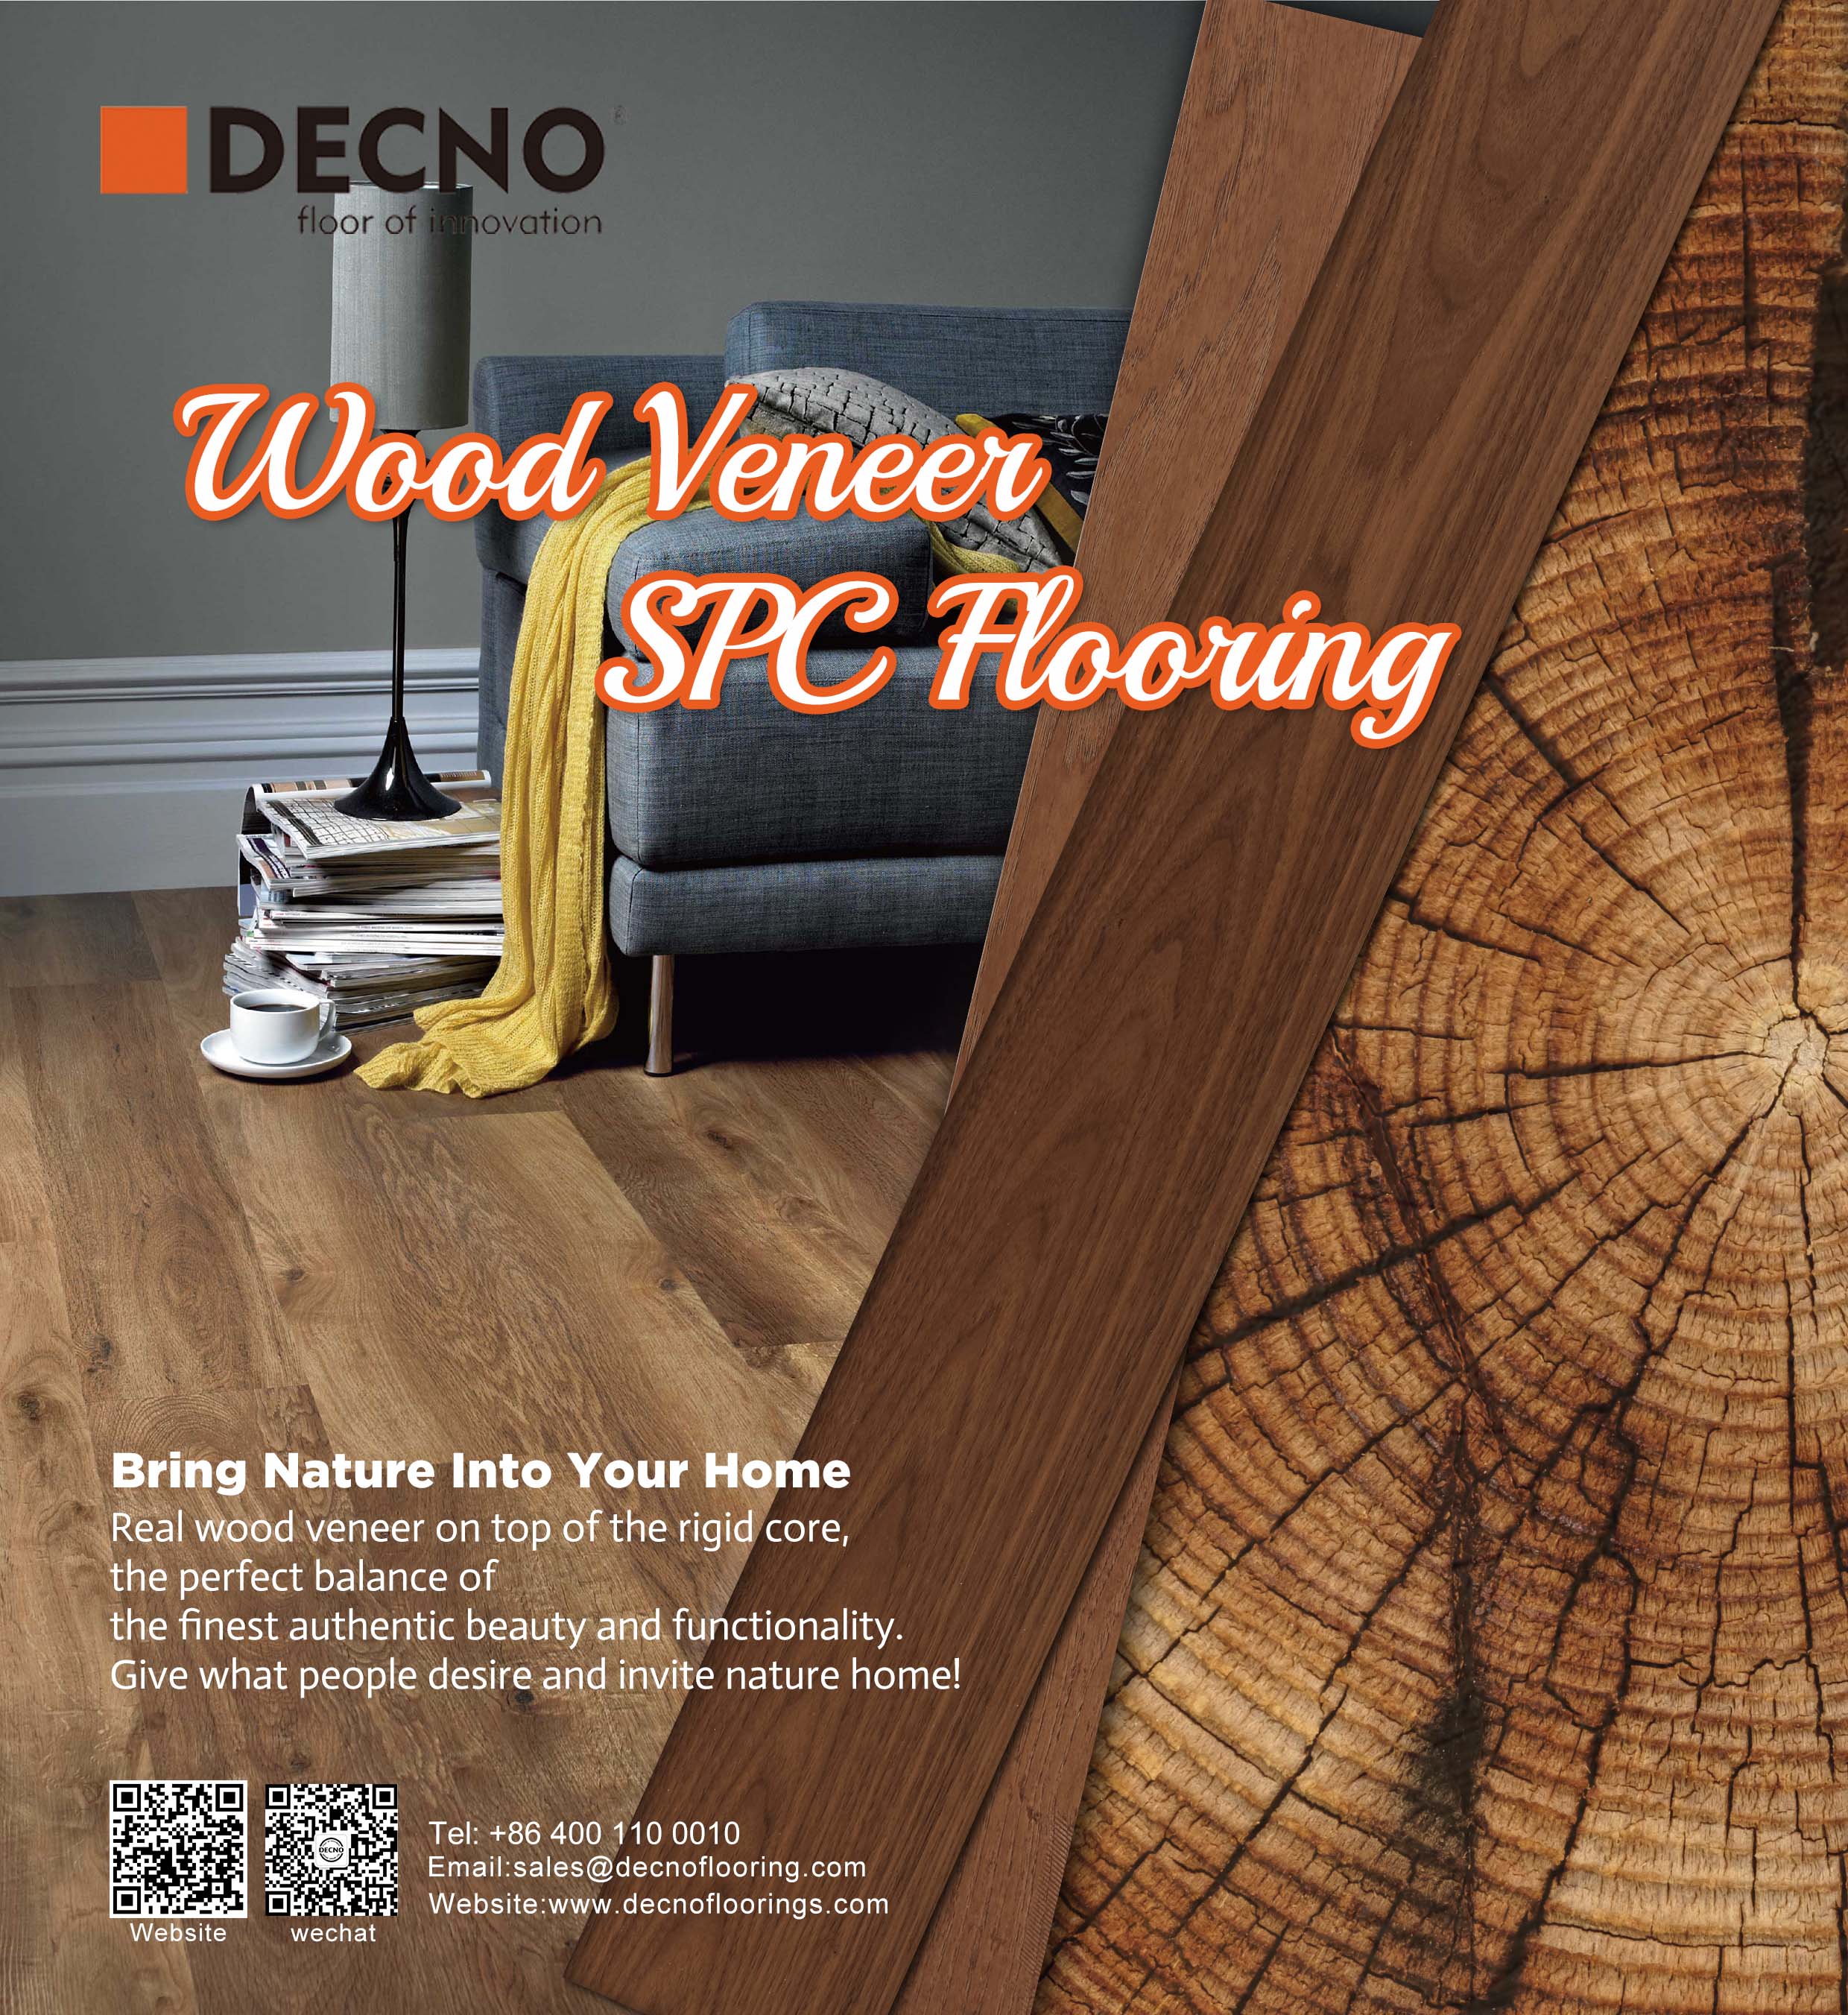 Hardwood SPC Flooring vs Engineered Hardwood Flooring